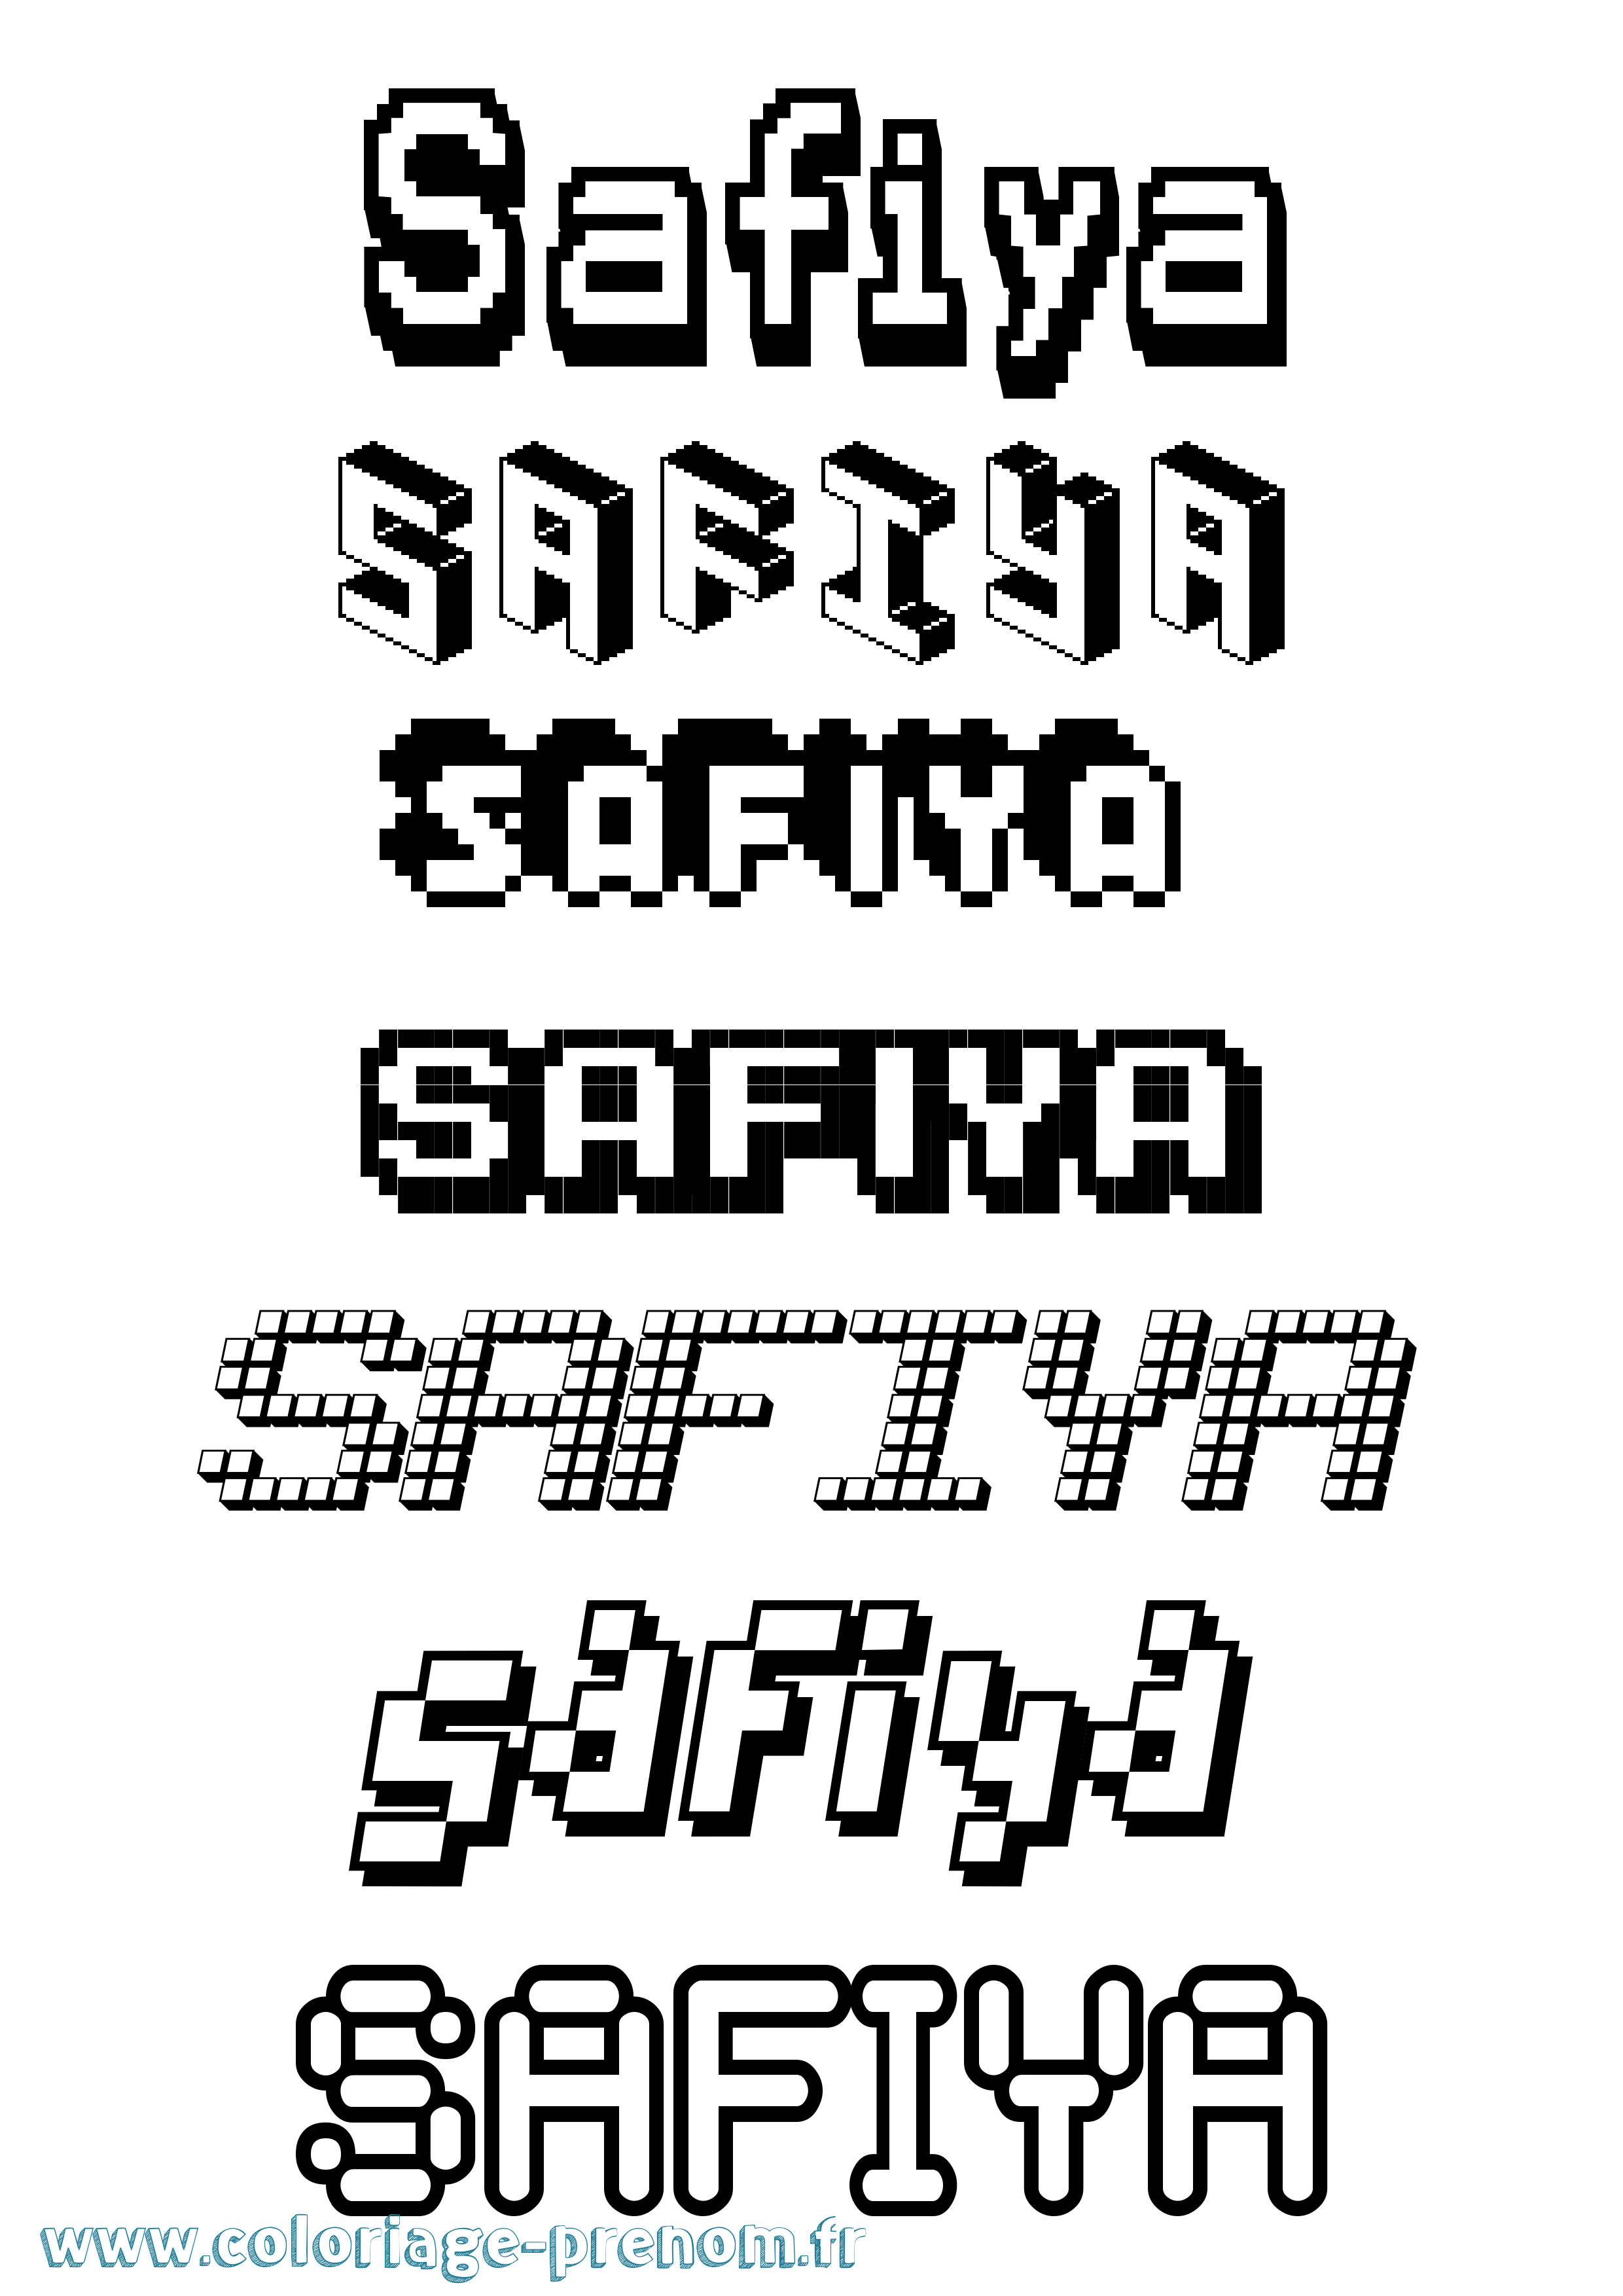 Coloriage prénom Safiya Pixel